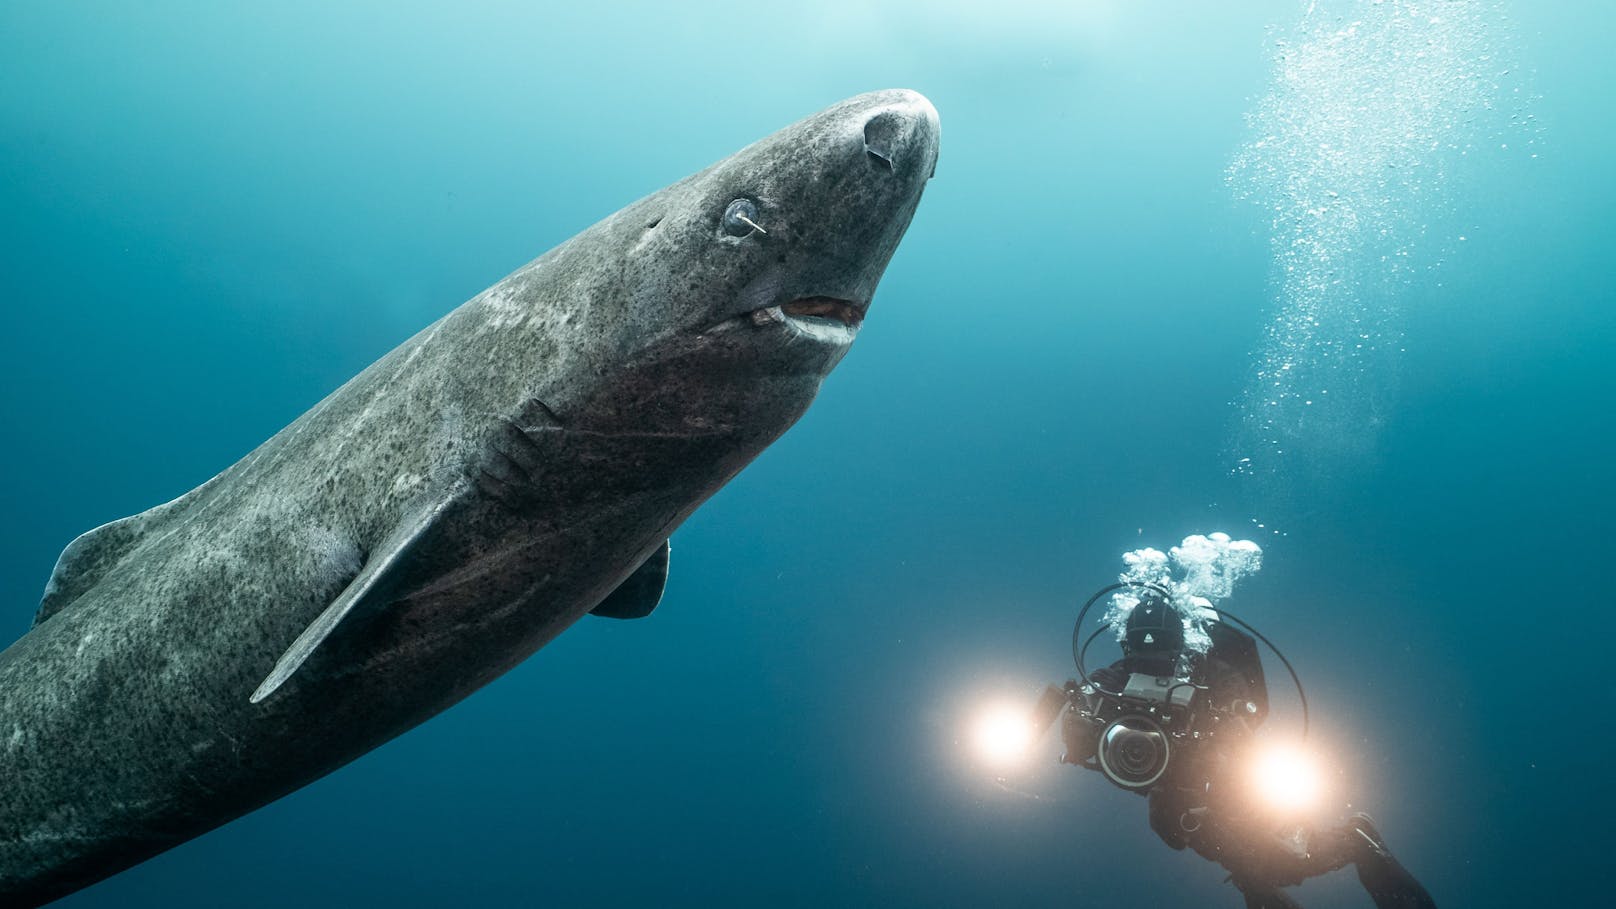 Christina Karliczek Skoglund film einen Eishai mit einem Ruderfußkrebs im Auge. Noch ist nicht klar, ob der Krebs ein Parasit oder ein Symbiont ist…